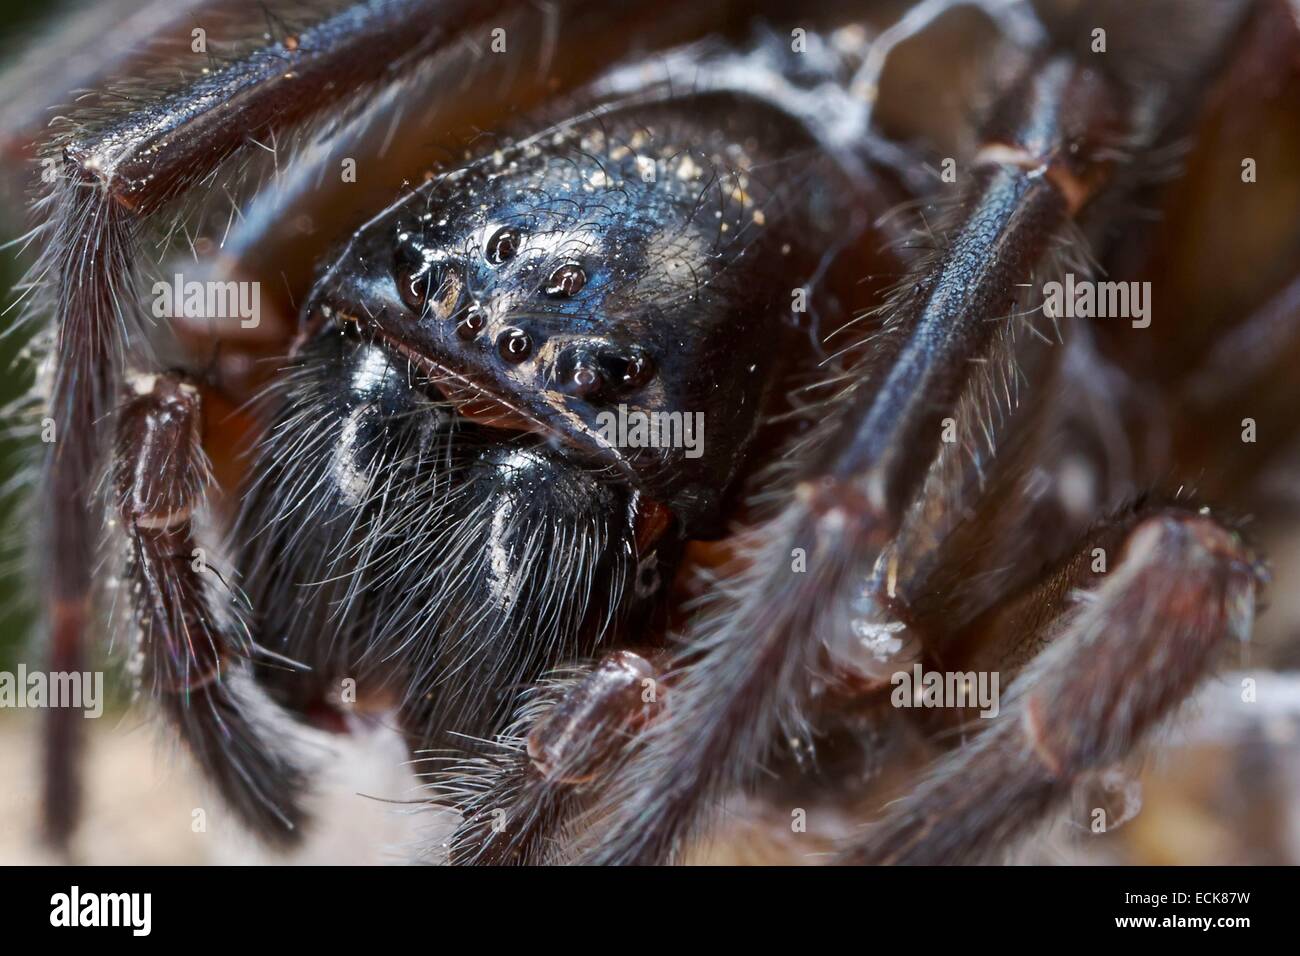 France, Poitiers, Amaurobiidae, Spider, Noir (Lace-Weaver Amaurobius ferox), portrait Banque D'Images